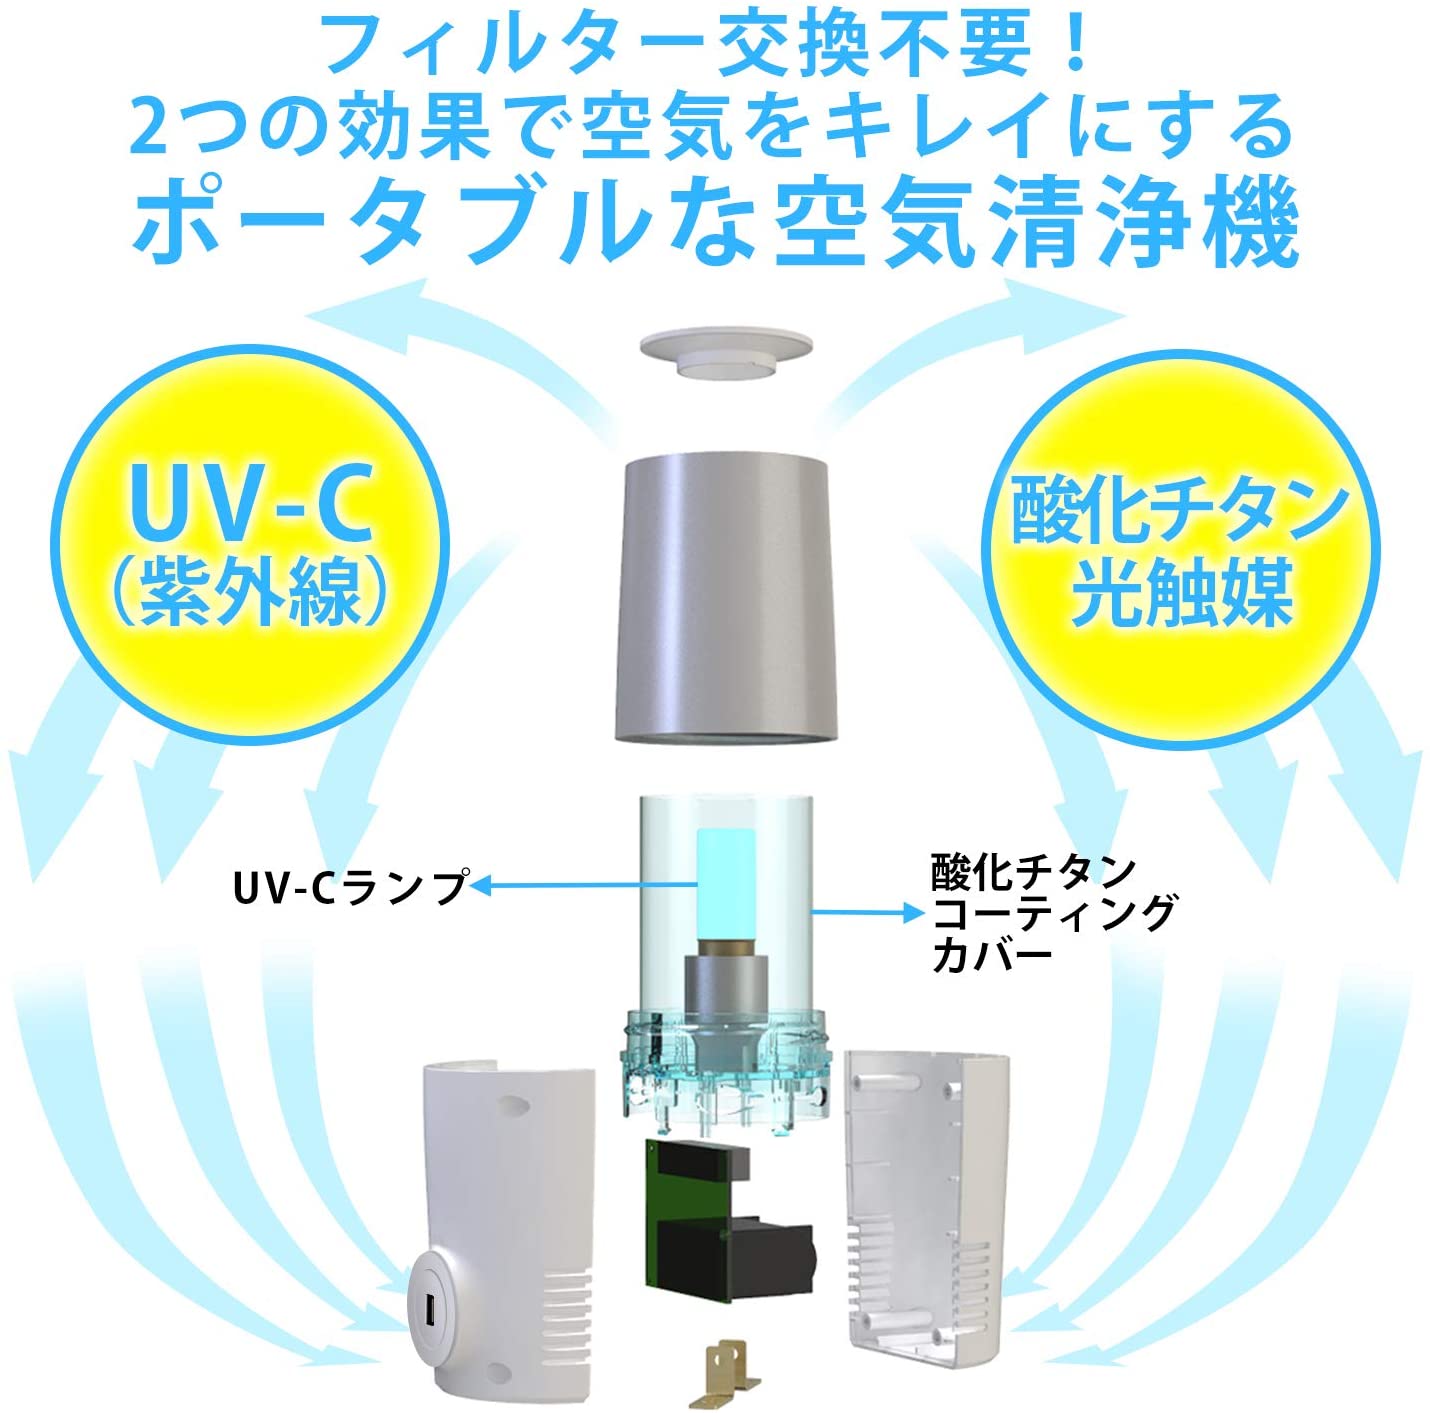 ヨーホー電子 UV光触媒空気清浄機 KOROSUKE mini ホワイト - 冷暖房/空調